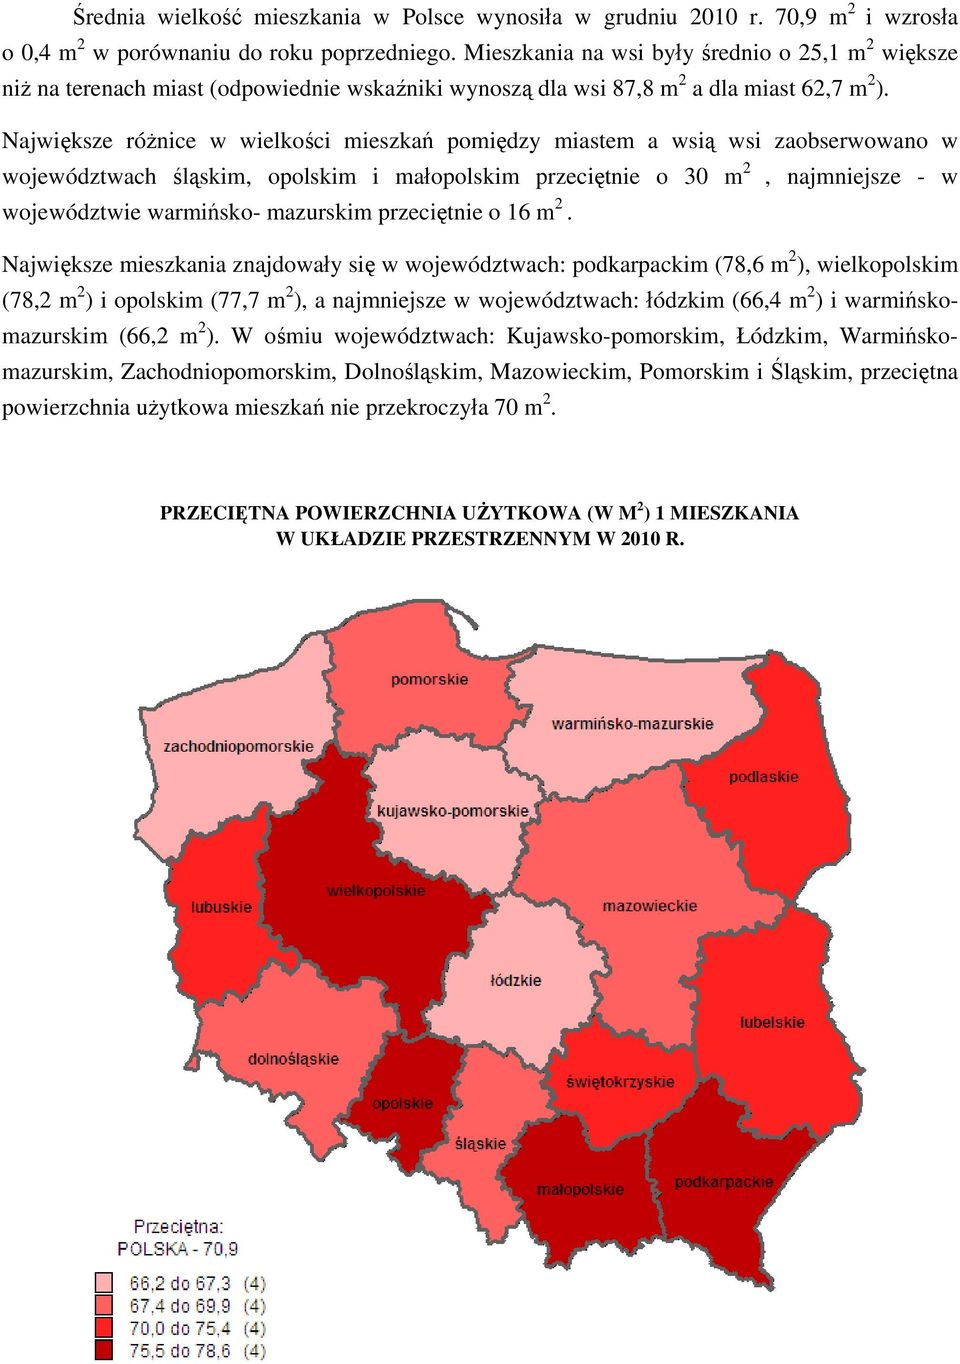 Największe różnice w wielkości mieszkań pomiędzy miastem a wsią wsi zaobserwowano w województwach śląskim, opolskim i małopolskim przeciętnie o 30 m 2, najmniejsze - w województwie warmińsko-